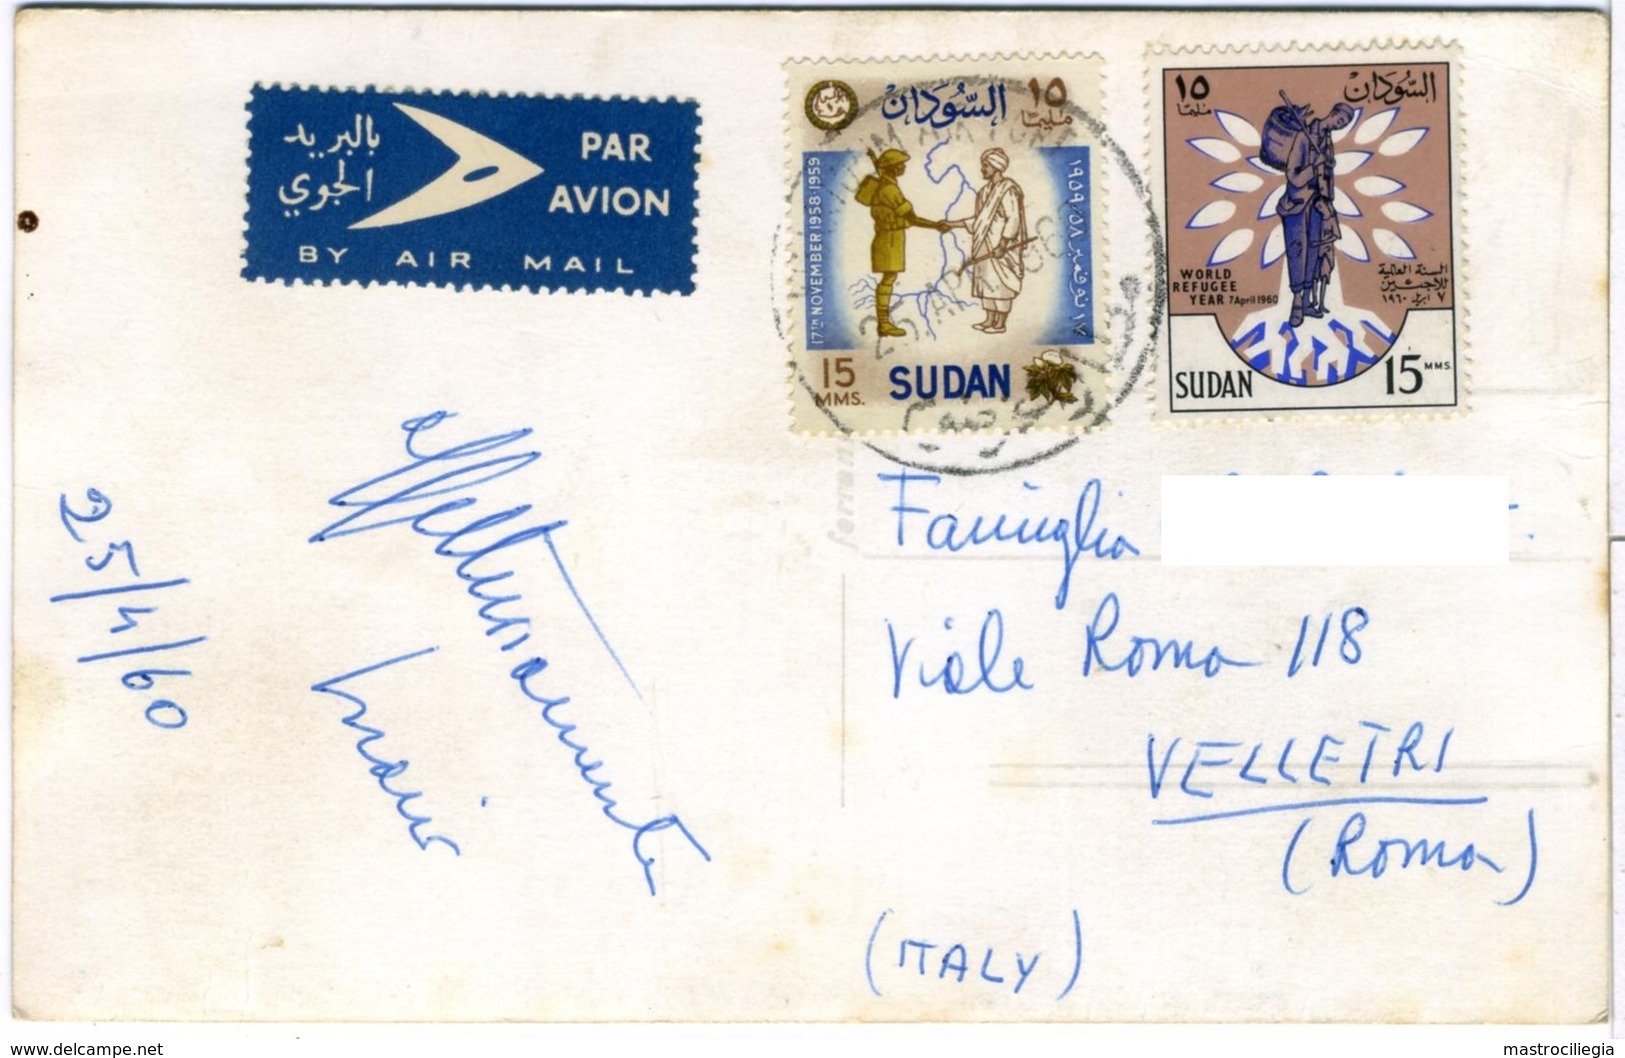 SUDAN  Minarets  Cannon  Ed. Ferrania  2 Nice Stamps - Soudan